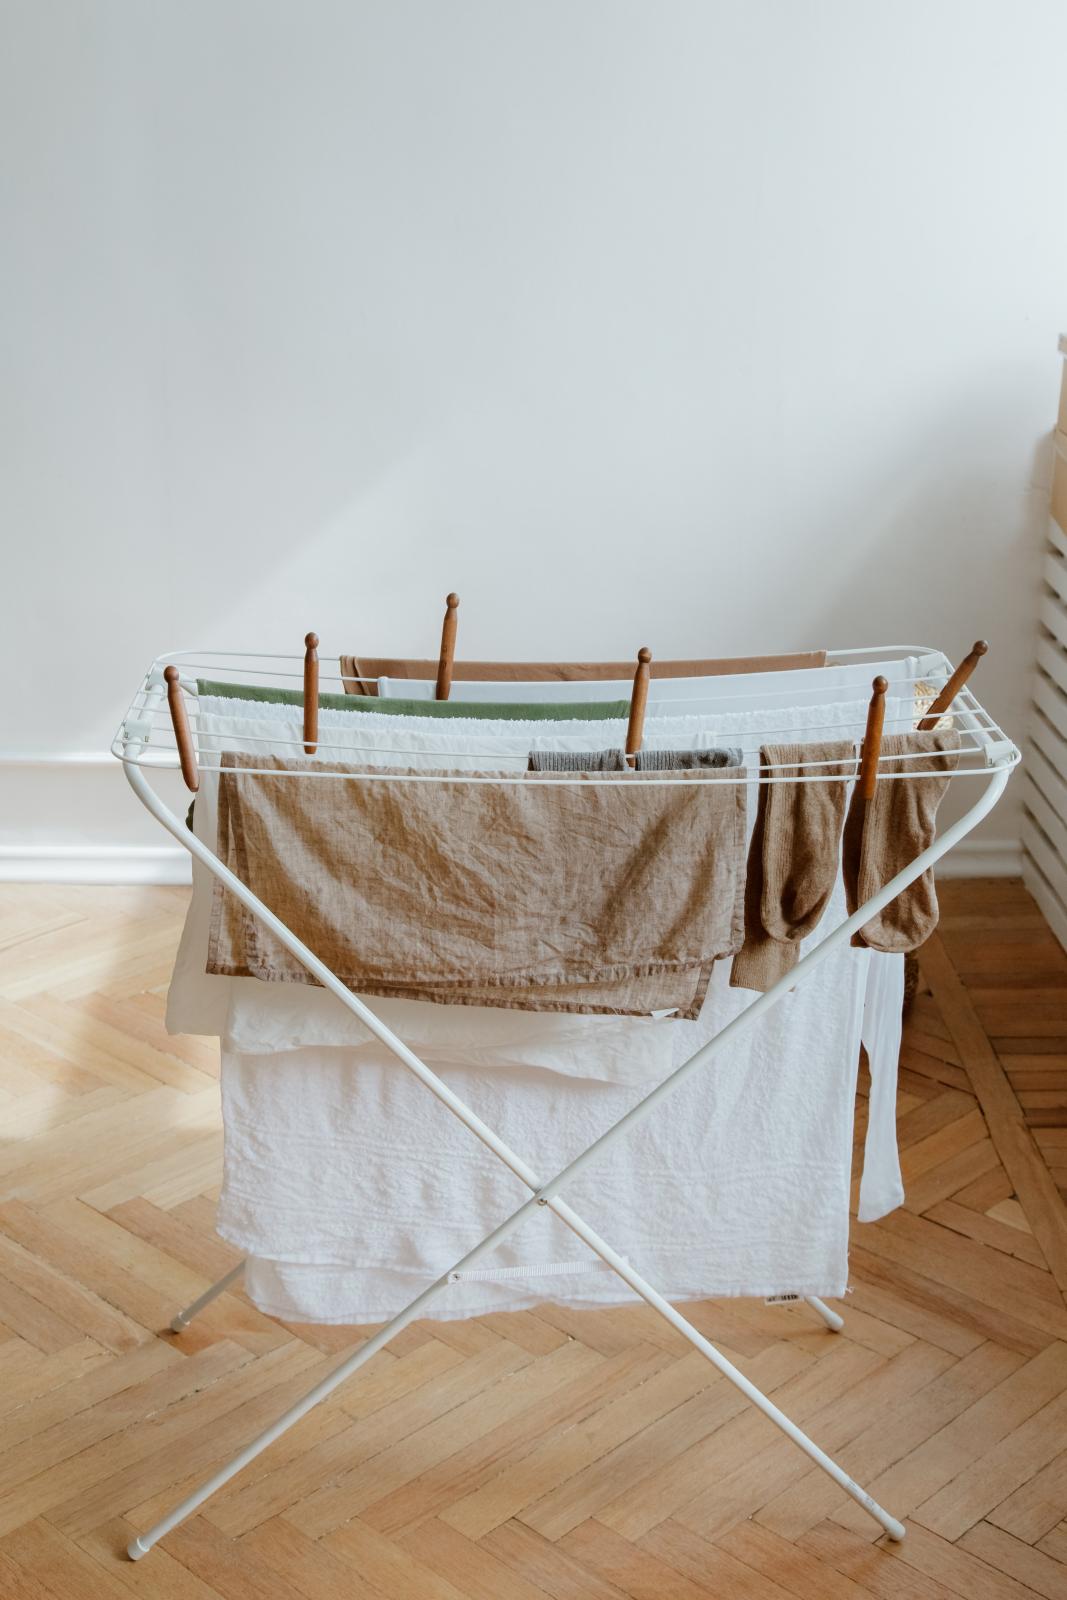 Il trucco economico per asciugare i tuoi vestiti senza asciugatrice in 2 ore